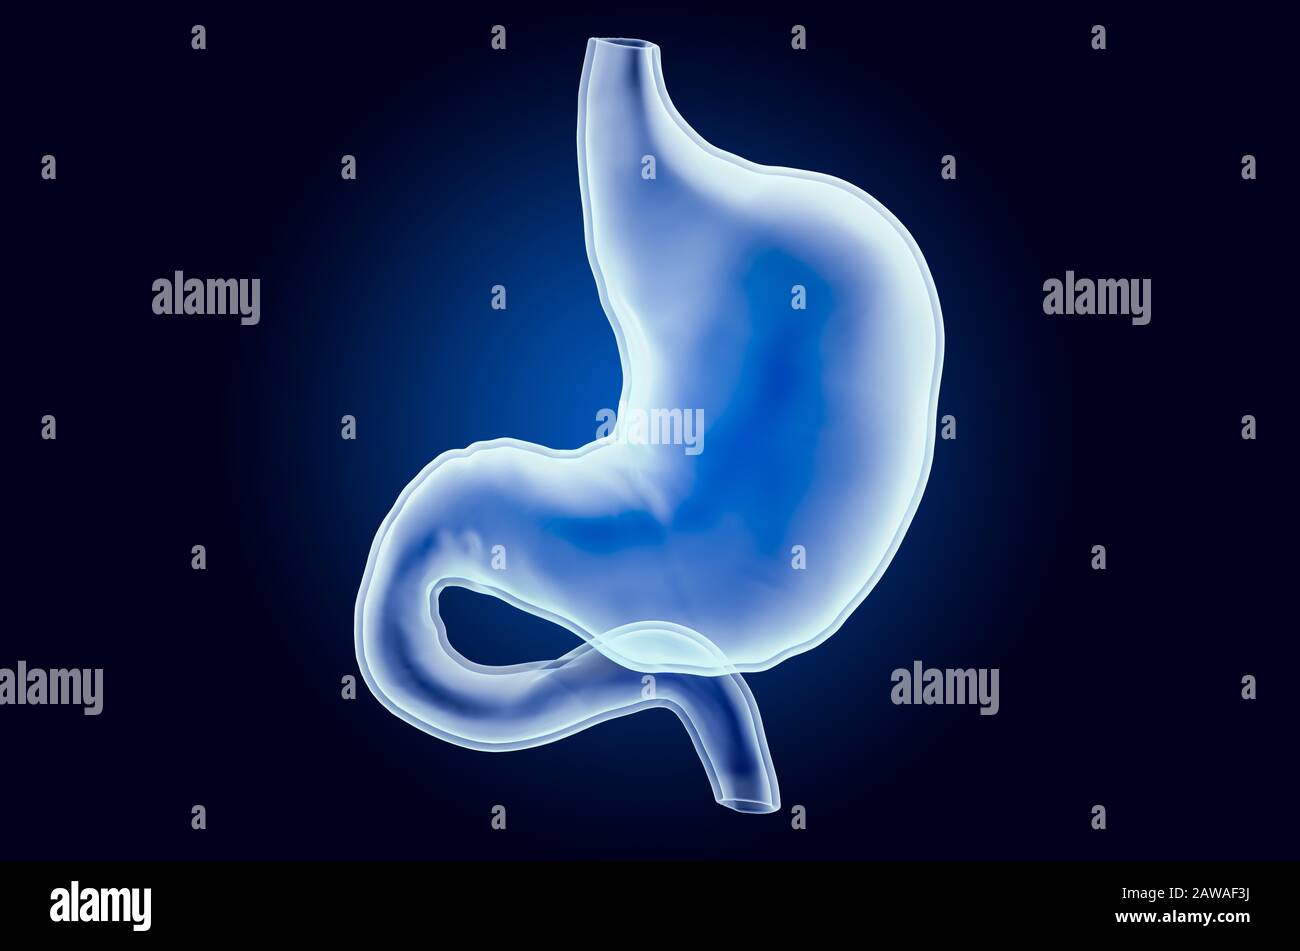 Stomaco umano, ologramma a raggi X. Rendering 3D su sfondo blu scuro Foto Stock